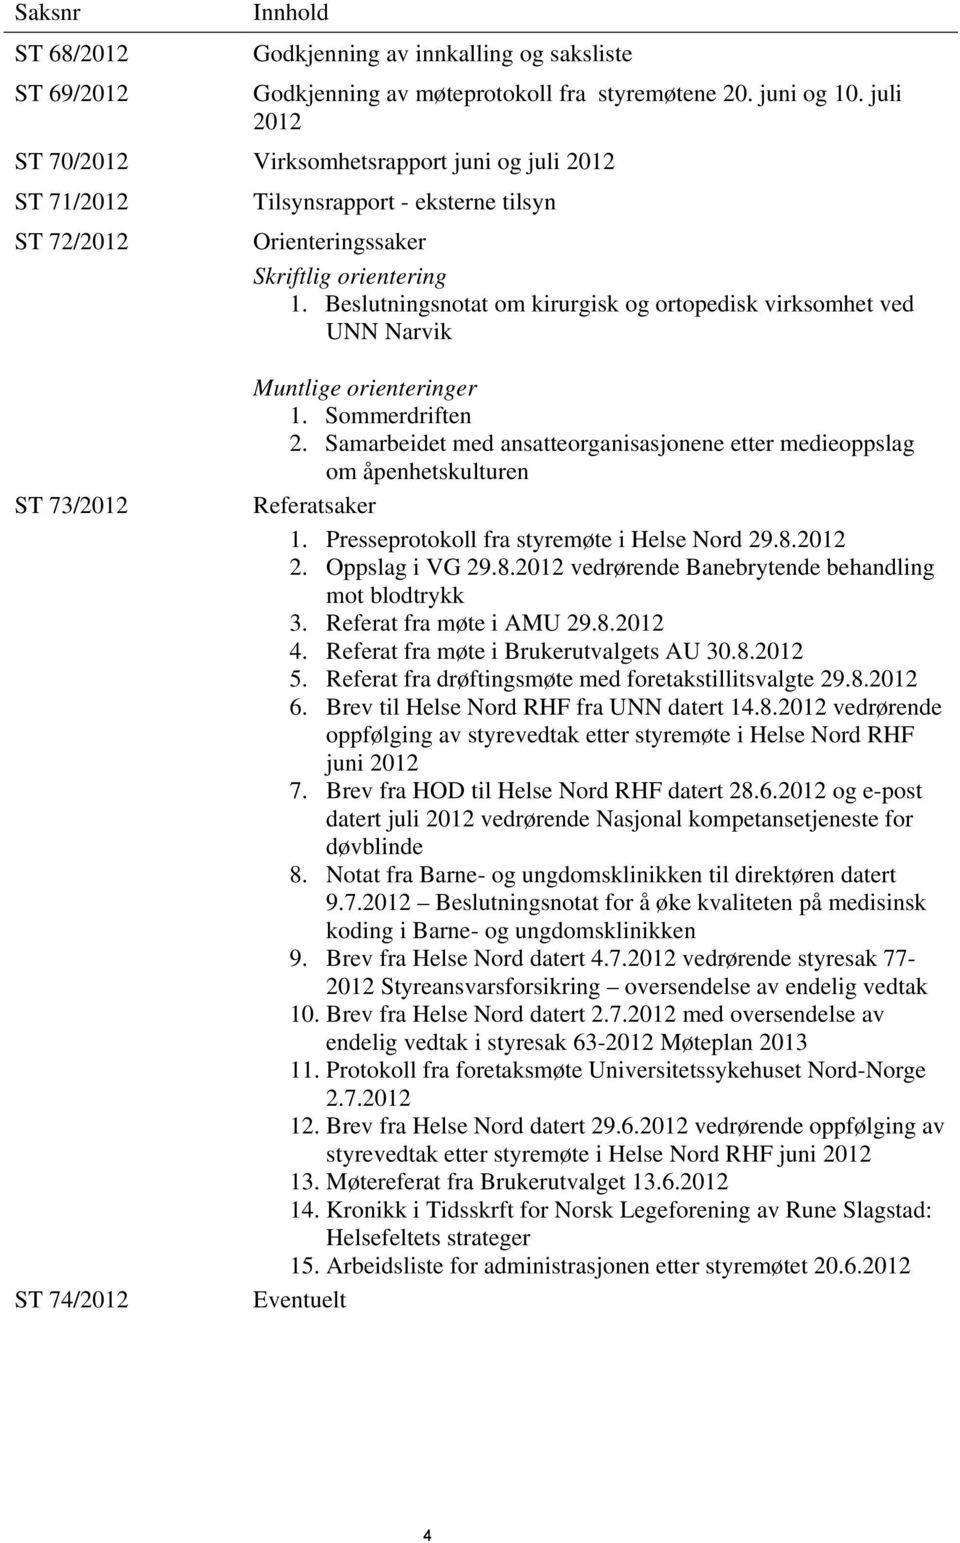 Beslutningsnotat om kirurgisk og ortopedisk virksomhet ved UNN Narvik ST 73/2012 ST 74/2012 Muntlige orienteringer 1. Sommerdriften 2.